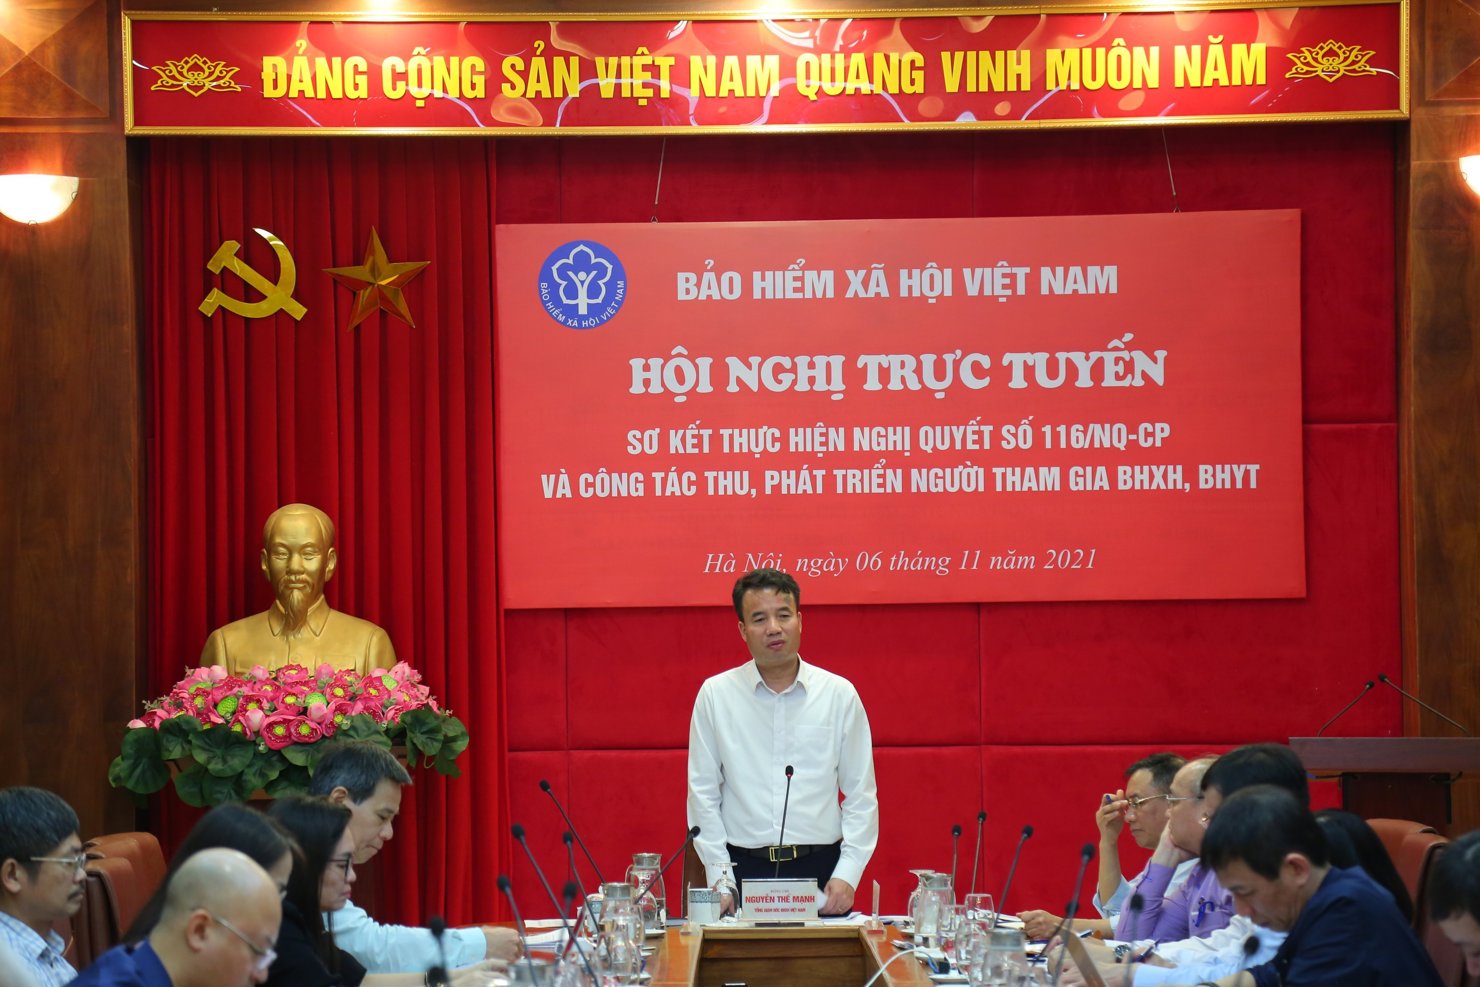 BHXH Việt Nam tổ chức Hội nghị sơ kết thực hiện Nghị quyết số 116/NQ-CP và công tác thu, phát triển người tham gia BHXH, BHYT.